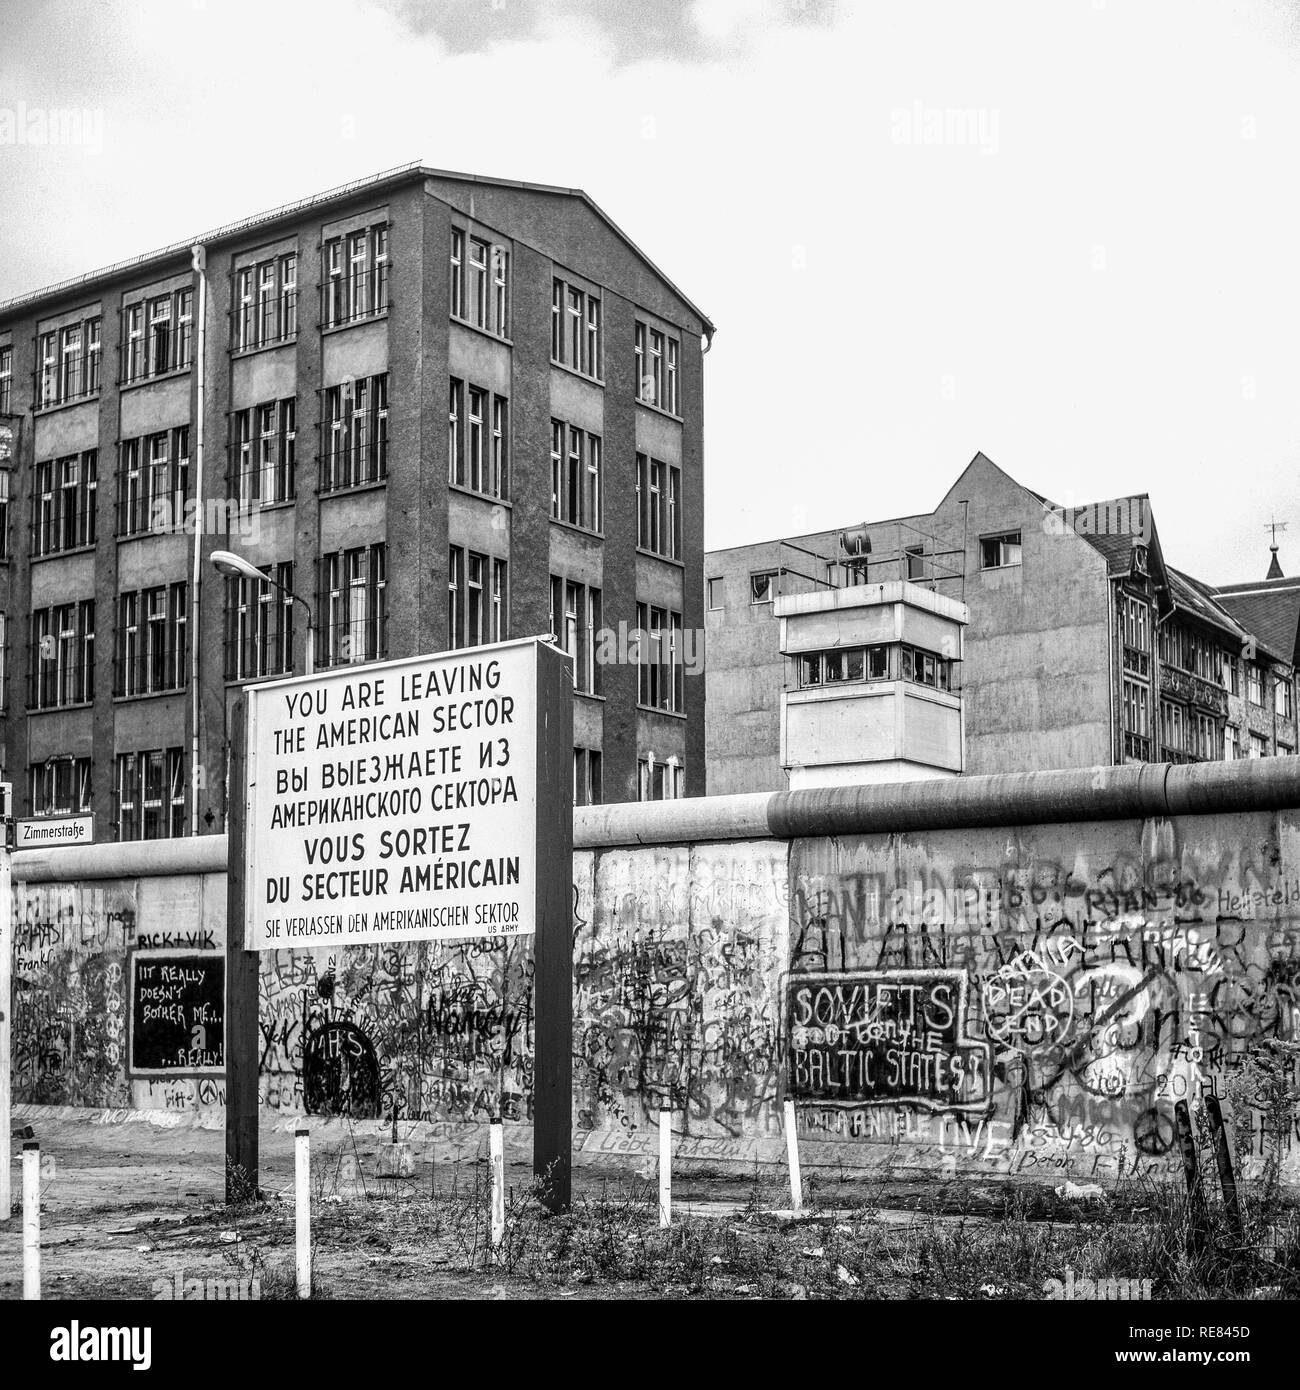 Agosto 1986, lasciando il settore americano segno di avvertimento, il muro di Berlino graffitis, Berlino Est torre di avvistamento, Zimmerstrasse street, Berlino Ovest, Germania, Europa Foto Stock